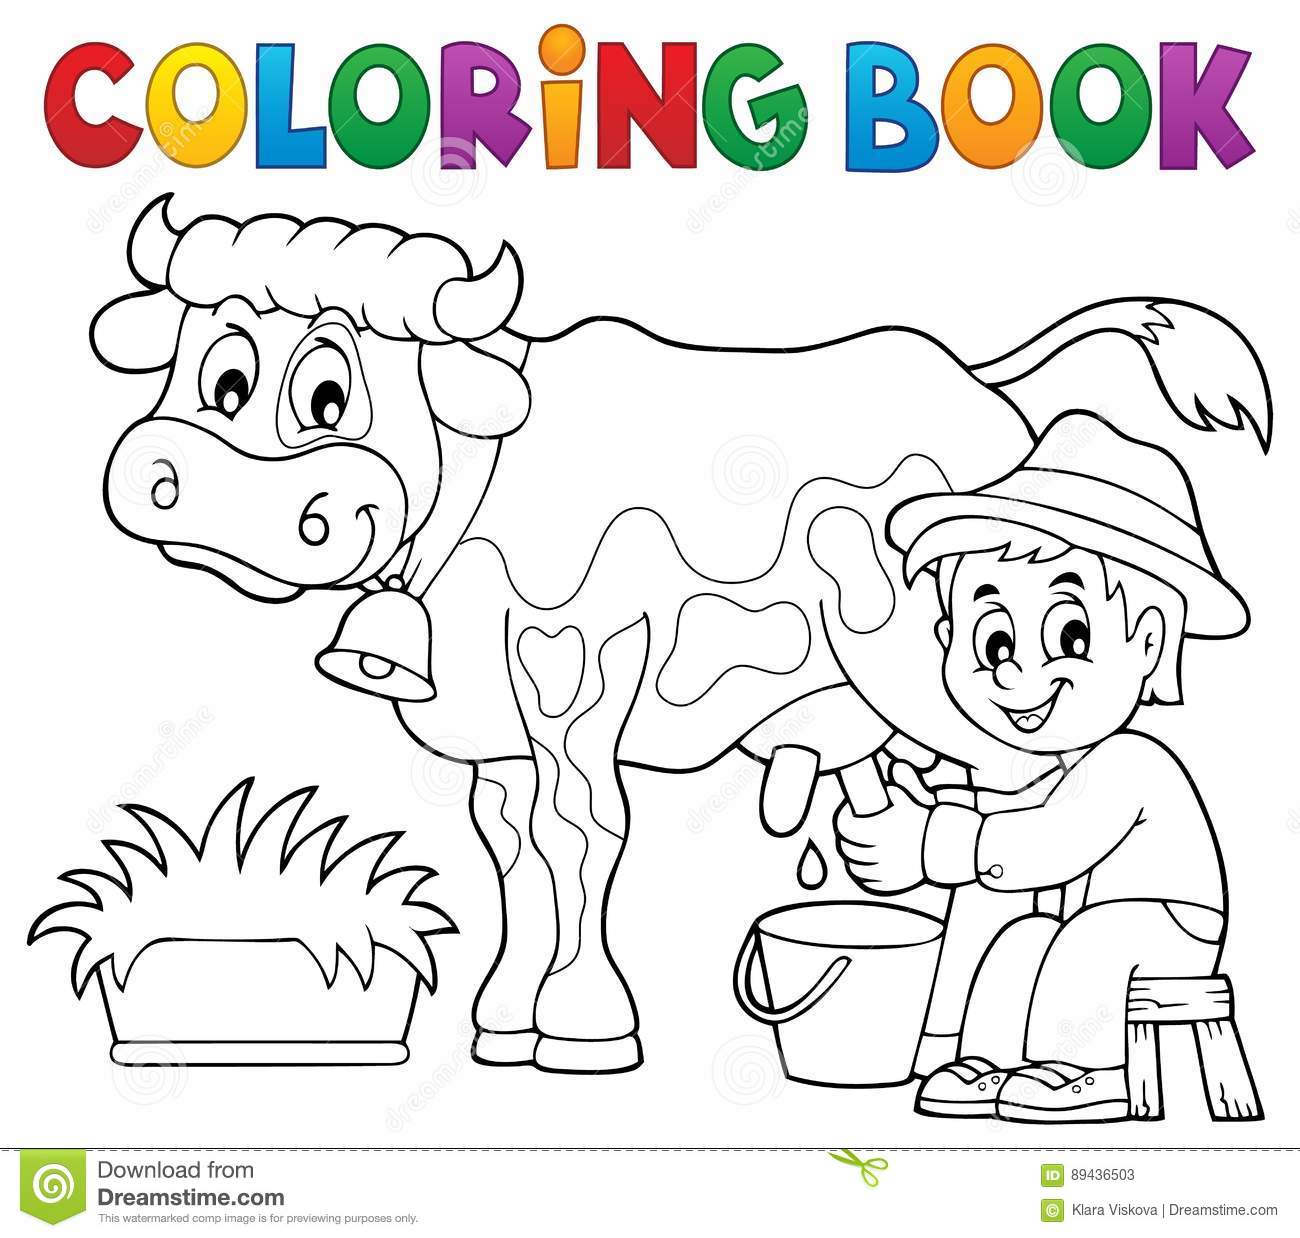  раскраски для детей и взрослых на тему фермер.  Интересные раскраски на тему фермер, мельница, огород. Раскраски в фермером                